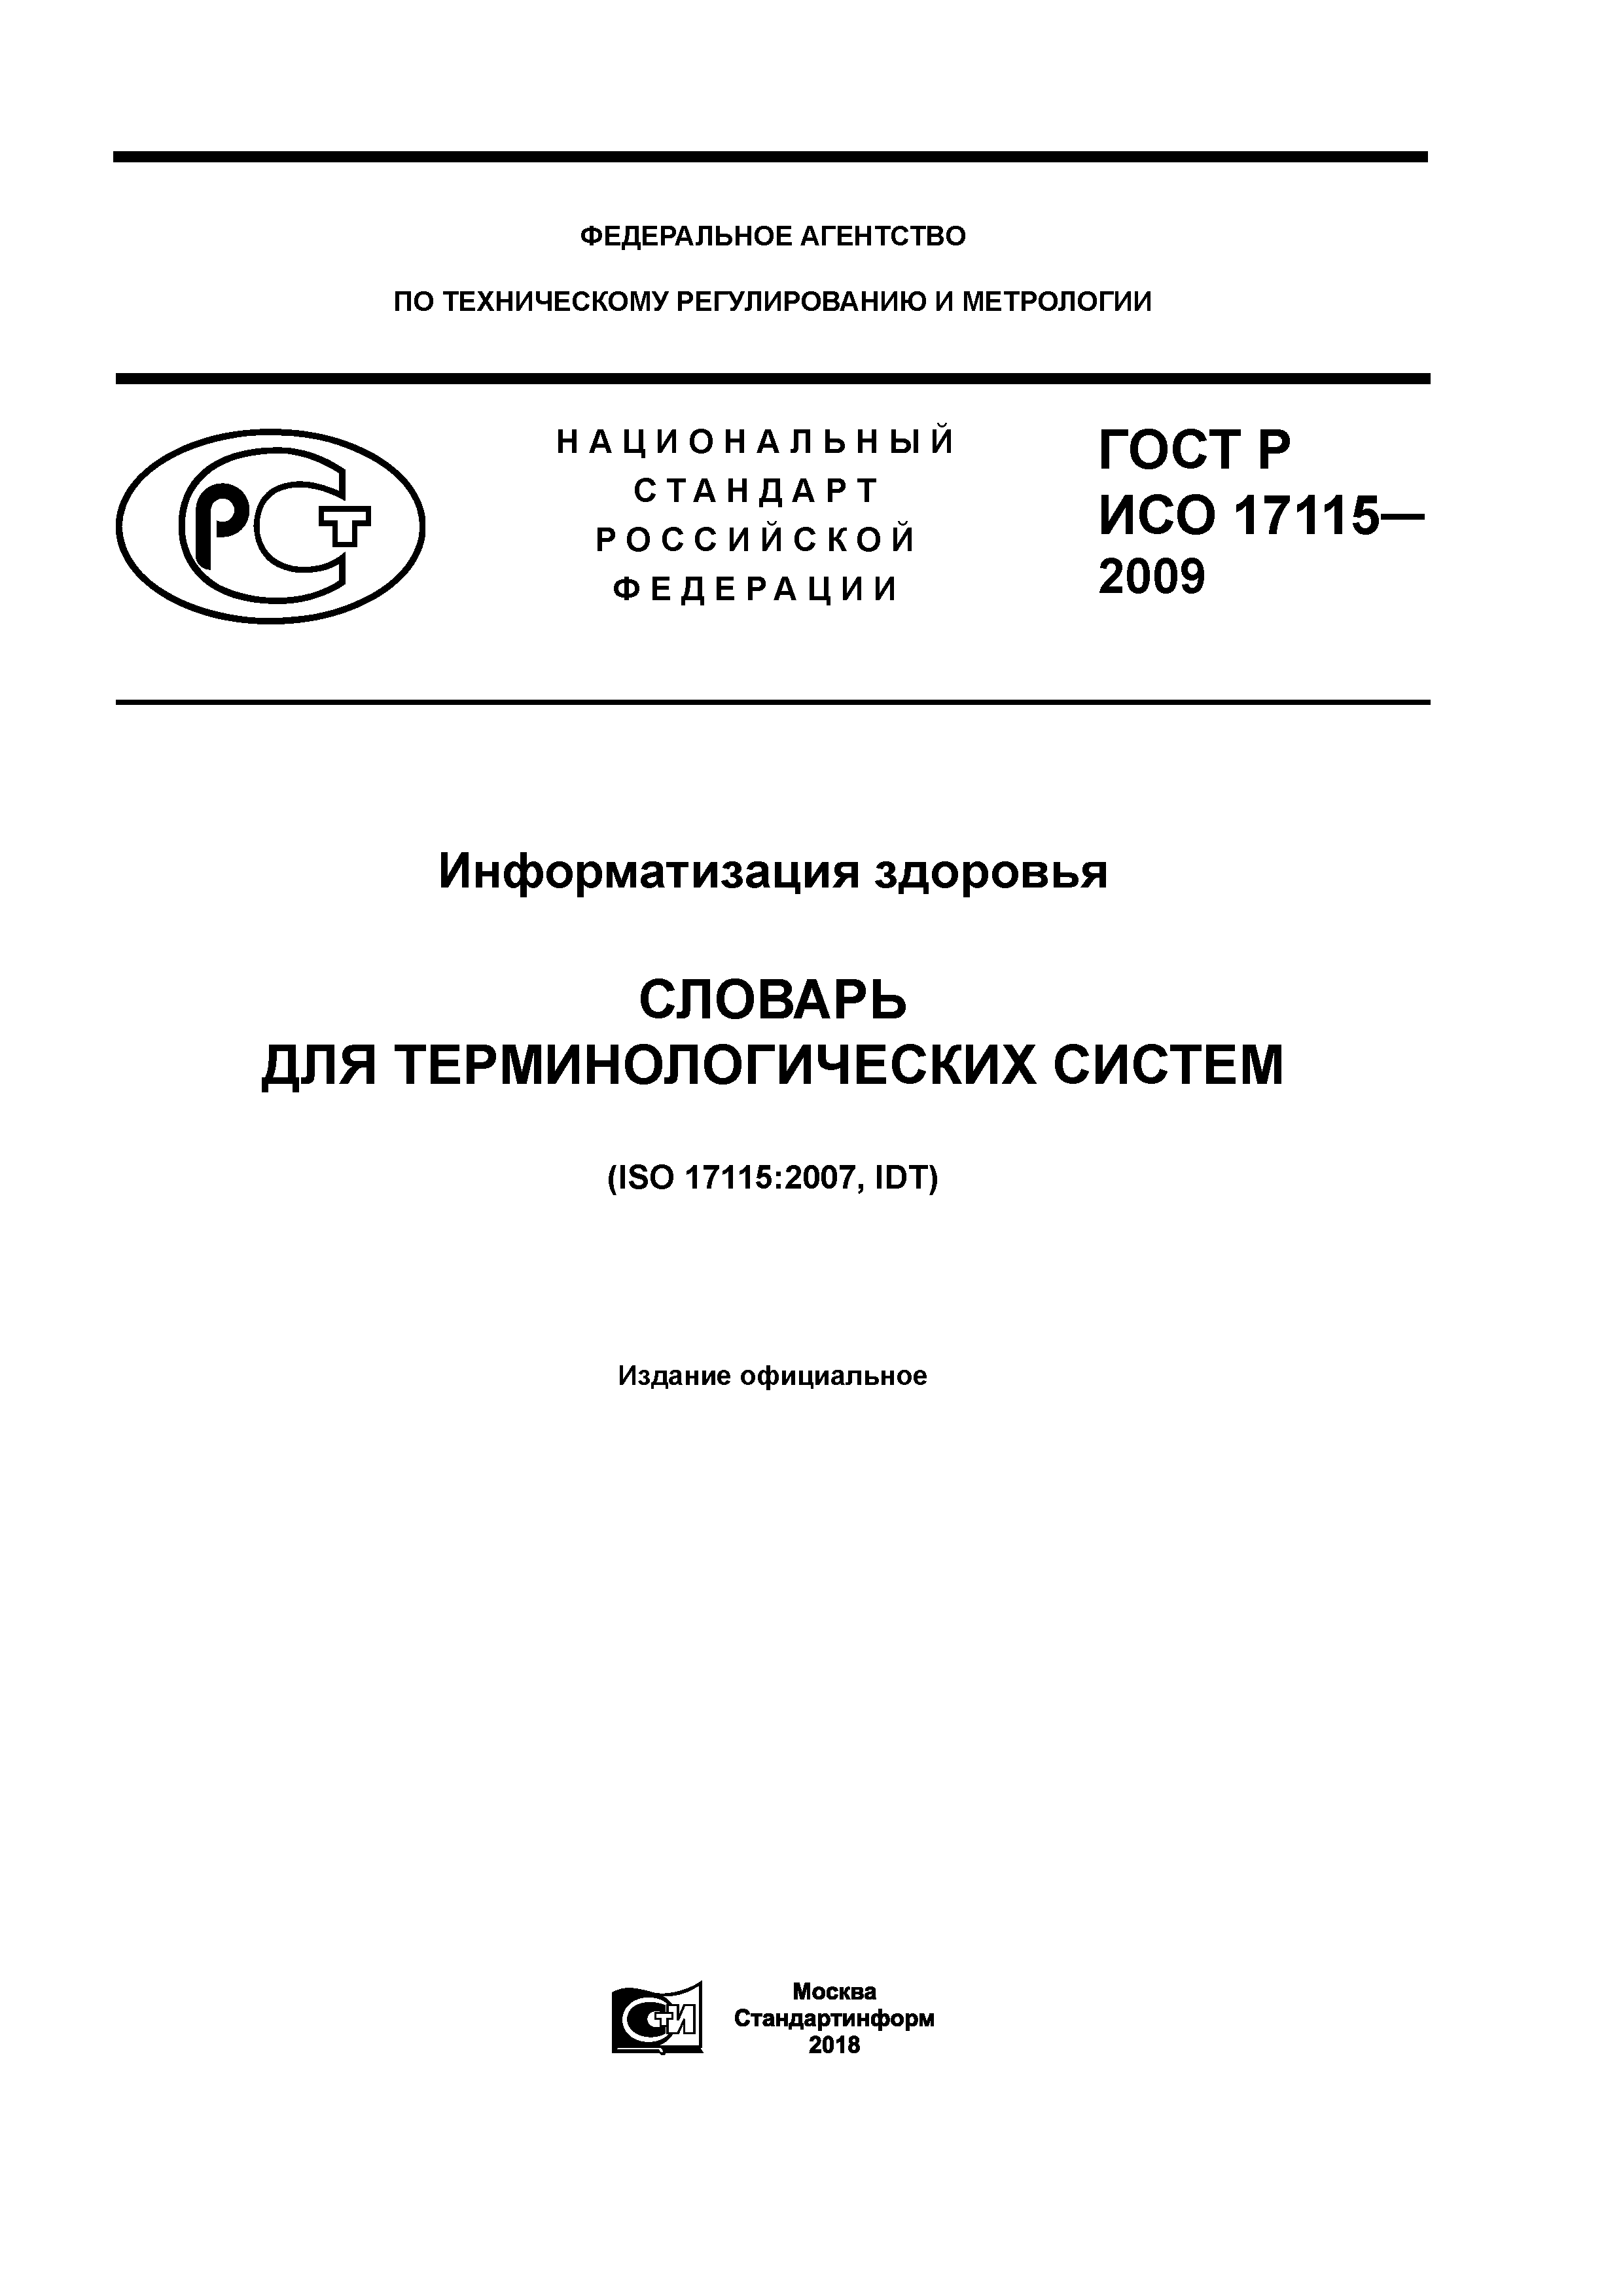 ГОСТ Р ИСО 17115-2009